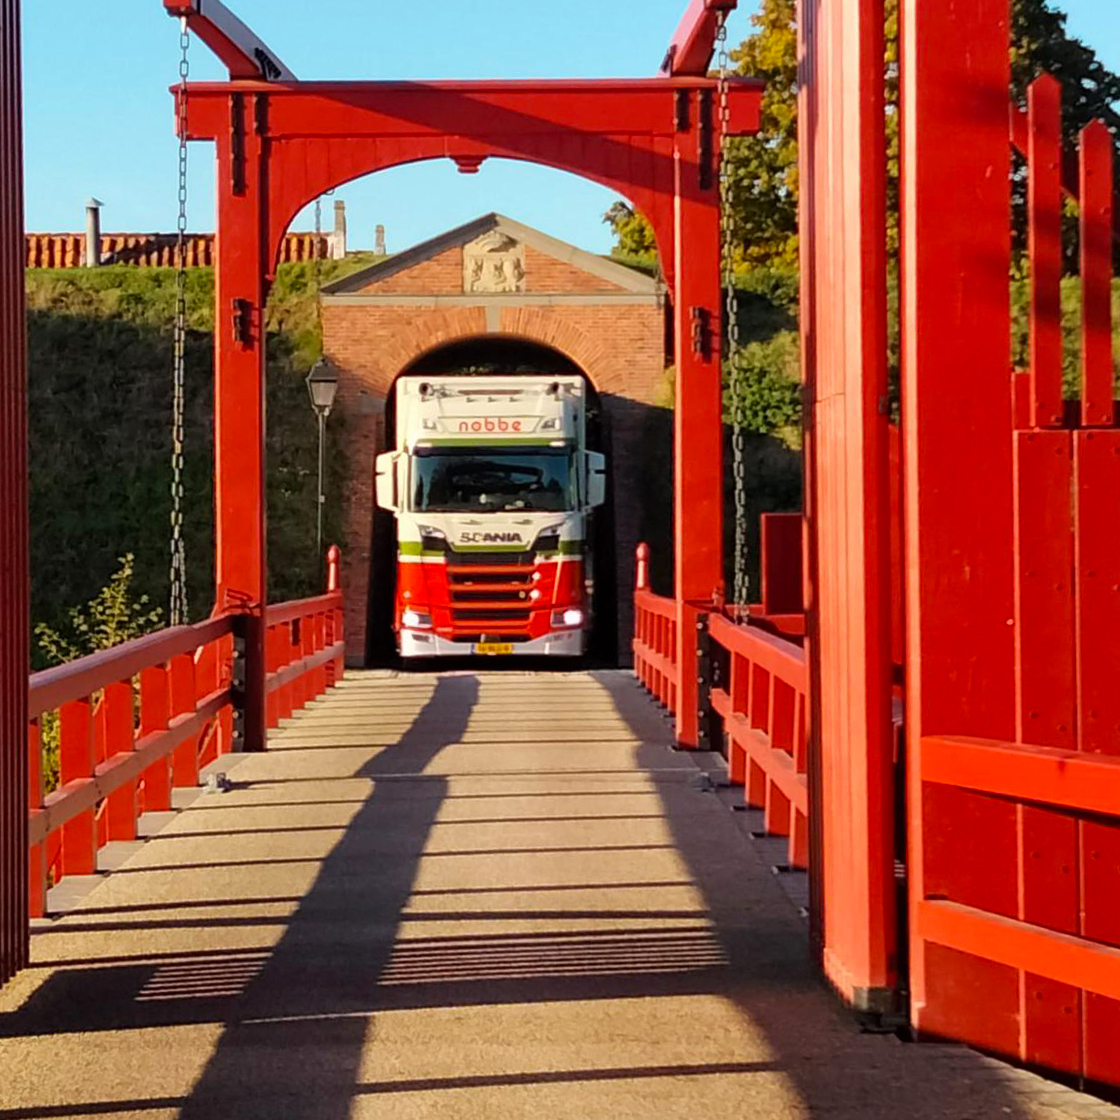 Een verhuiswagen van Verhuisbedrijf Nobbe rijdt door de poort van Bourtange.